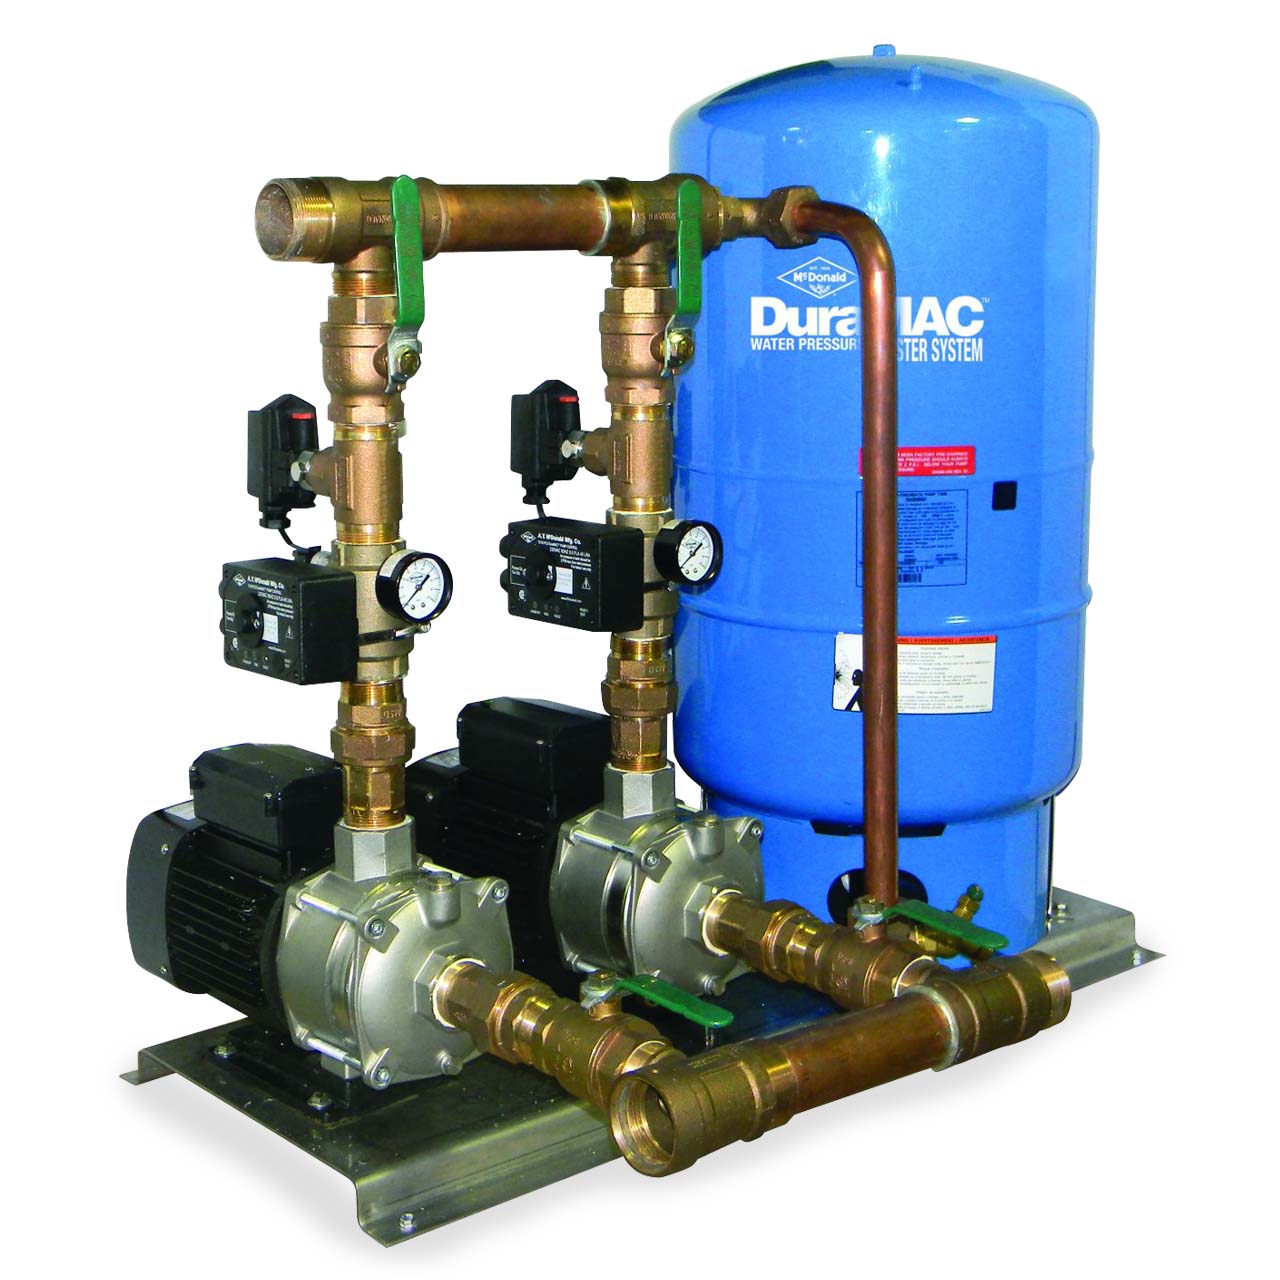 Model: 17044C120PC2-D DuraMac Duplex Water Pressure Booster System